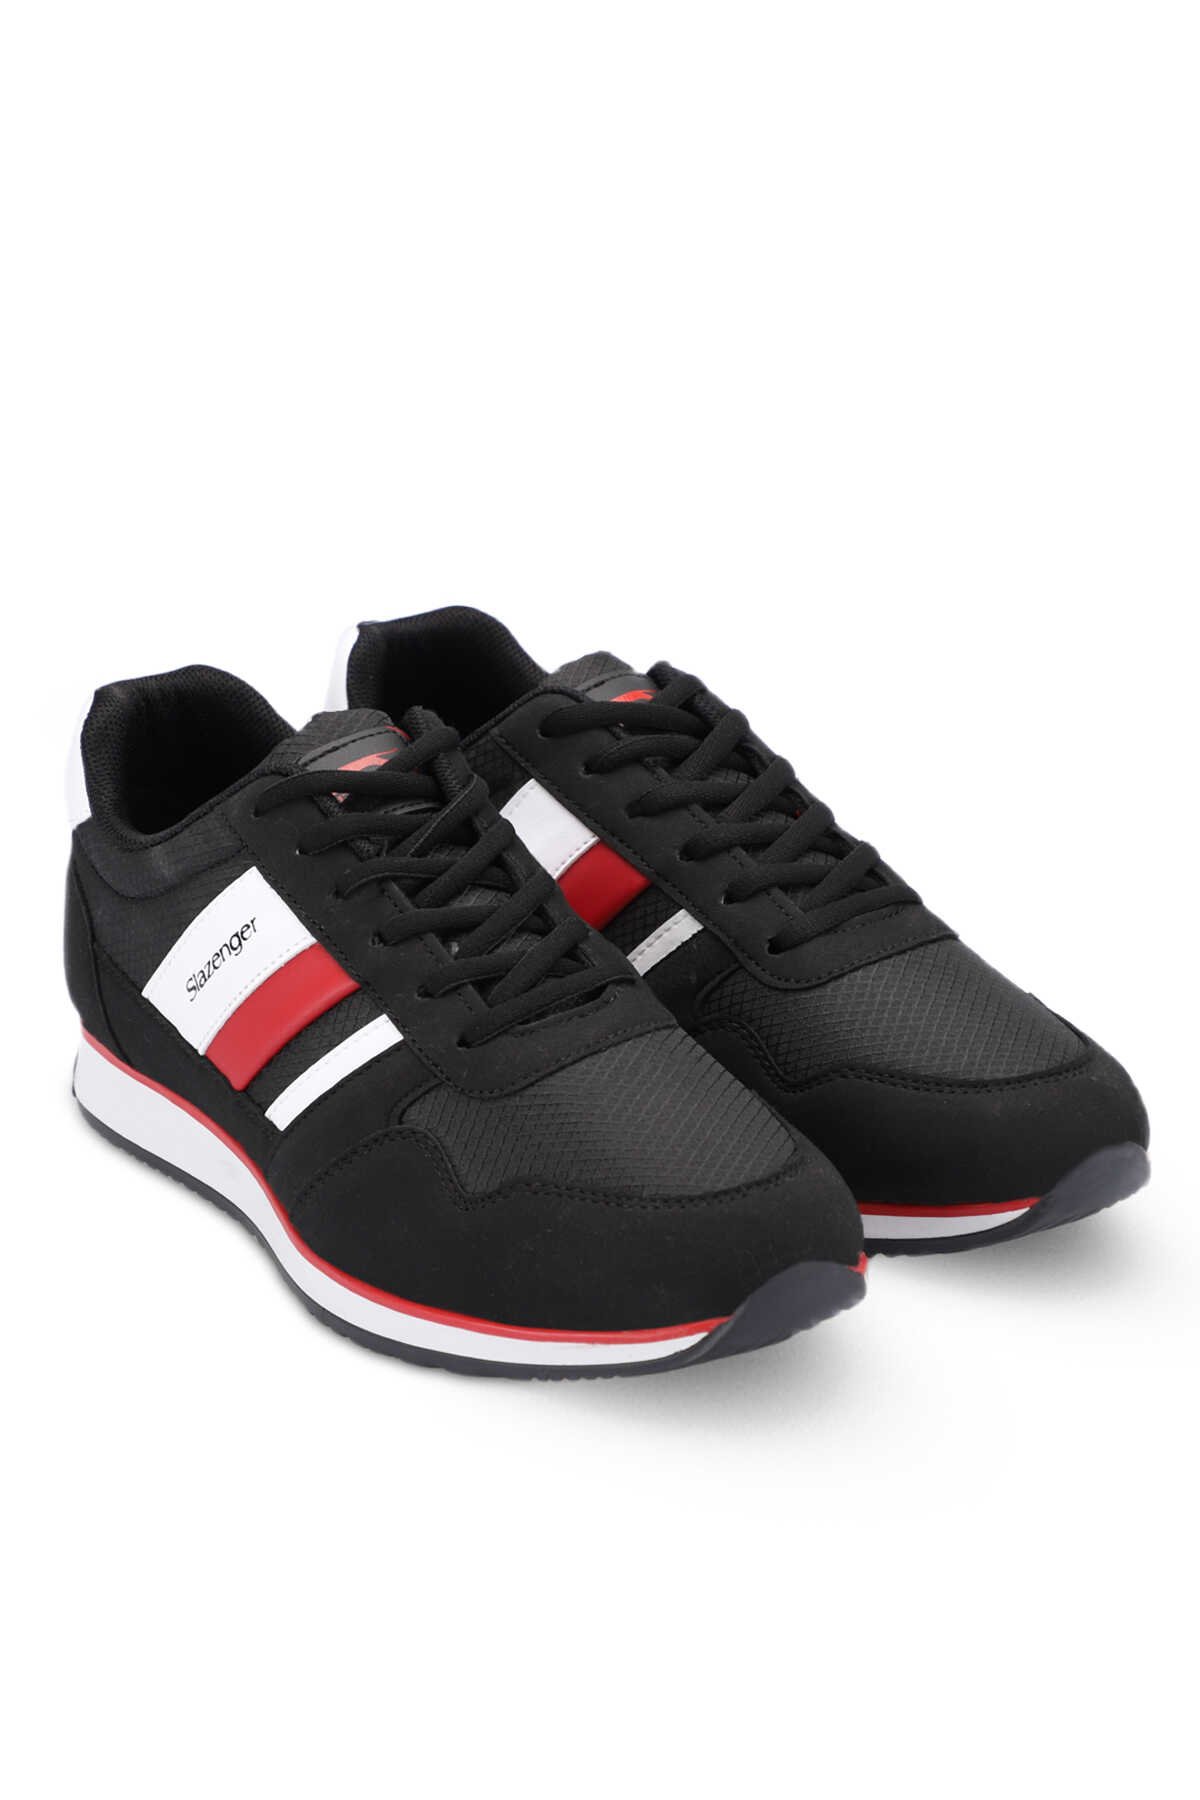 Slazenger ORIGIN I Sneaker Erkek Ayakkabı Siyah / Kırmızı